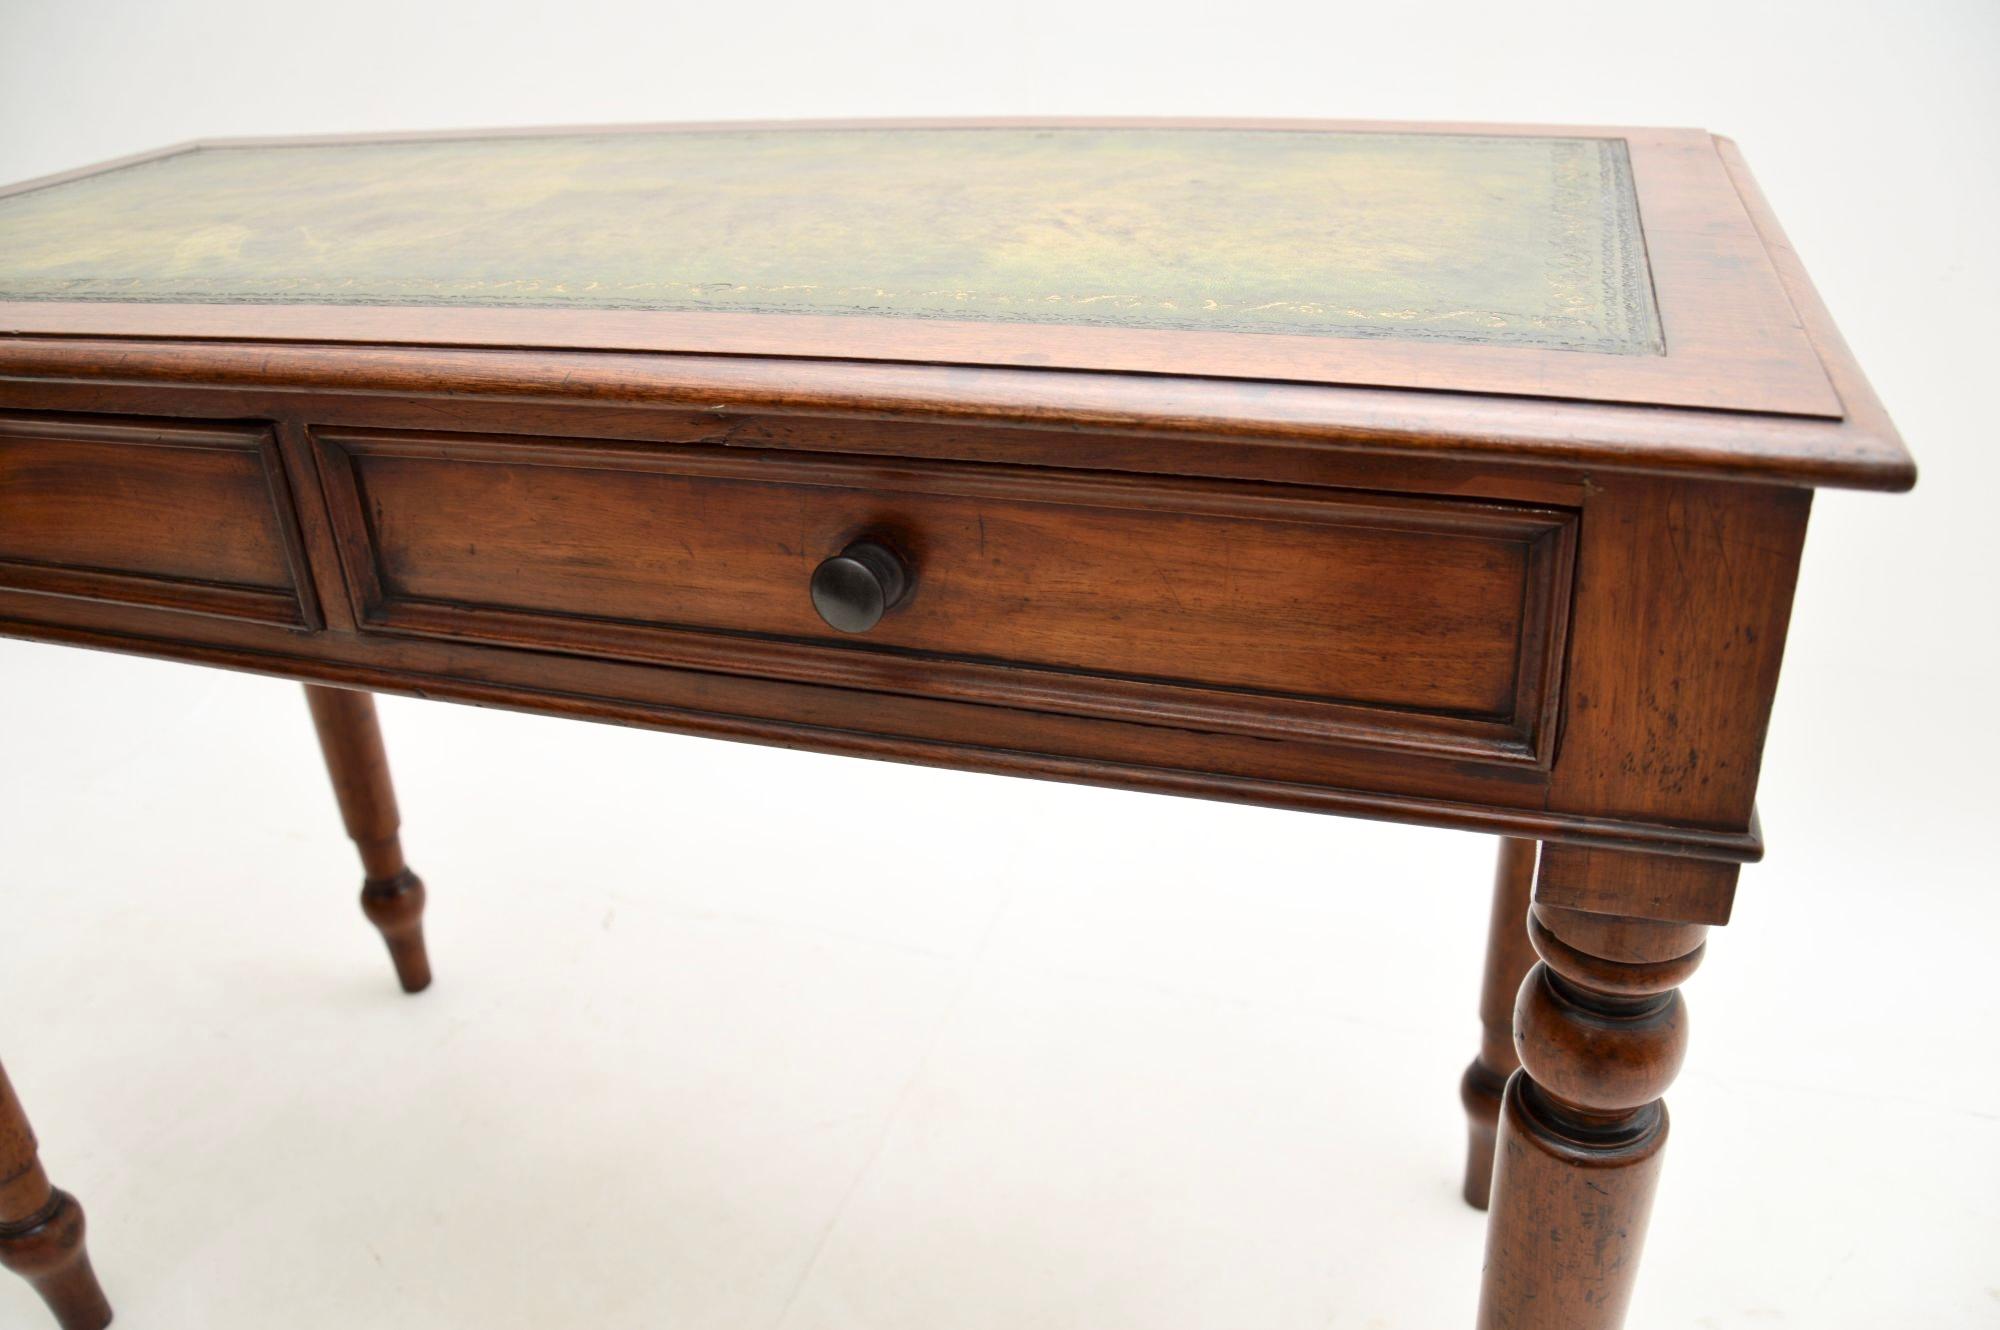 Cuir Antique table d'écriture victorienne / bureau